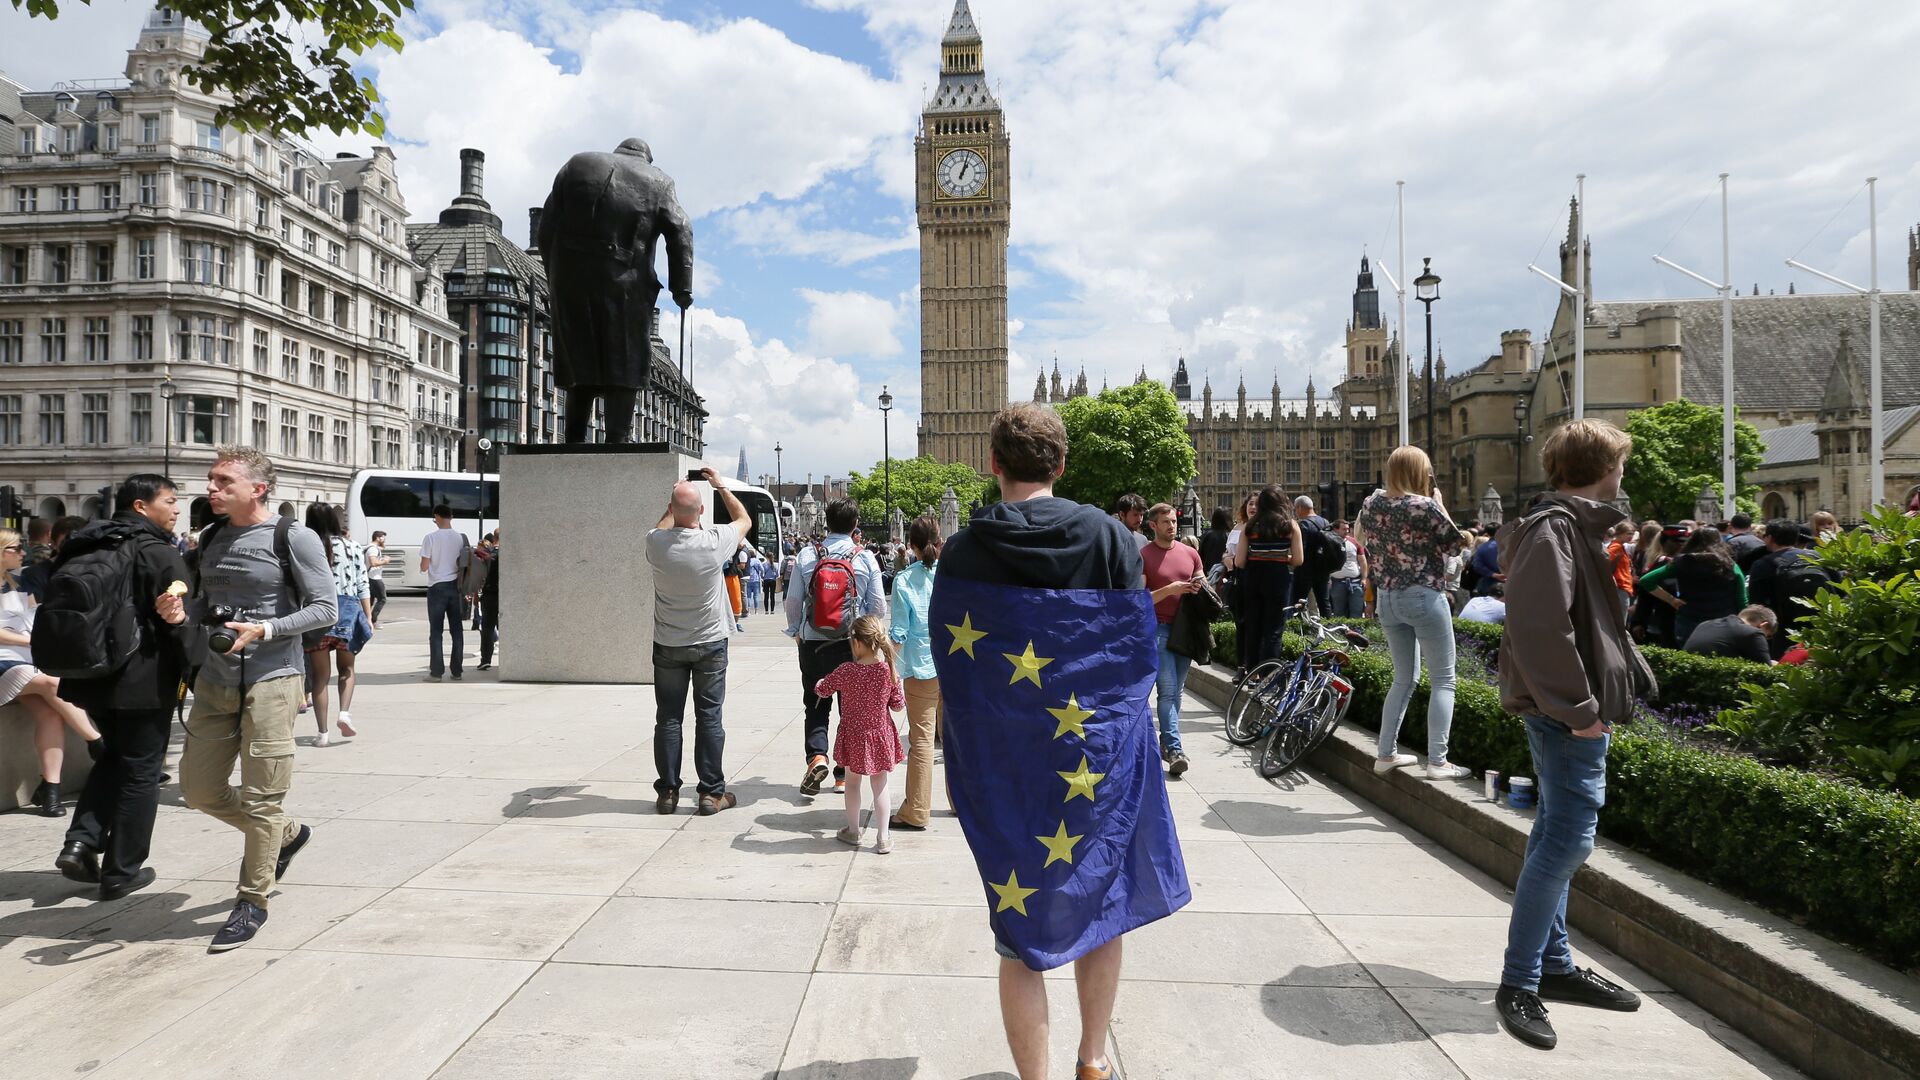 Мужчина с флагом ЕС на Парламентской площади Лондона, Великобритания. 25 июня 2016 - РИА Новости, 1920, 10.10.2019